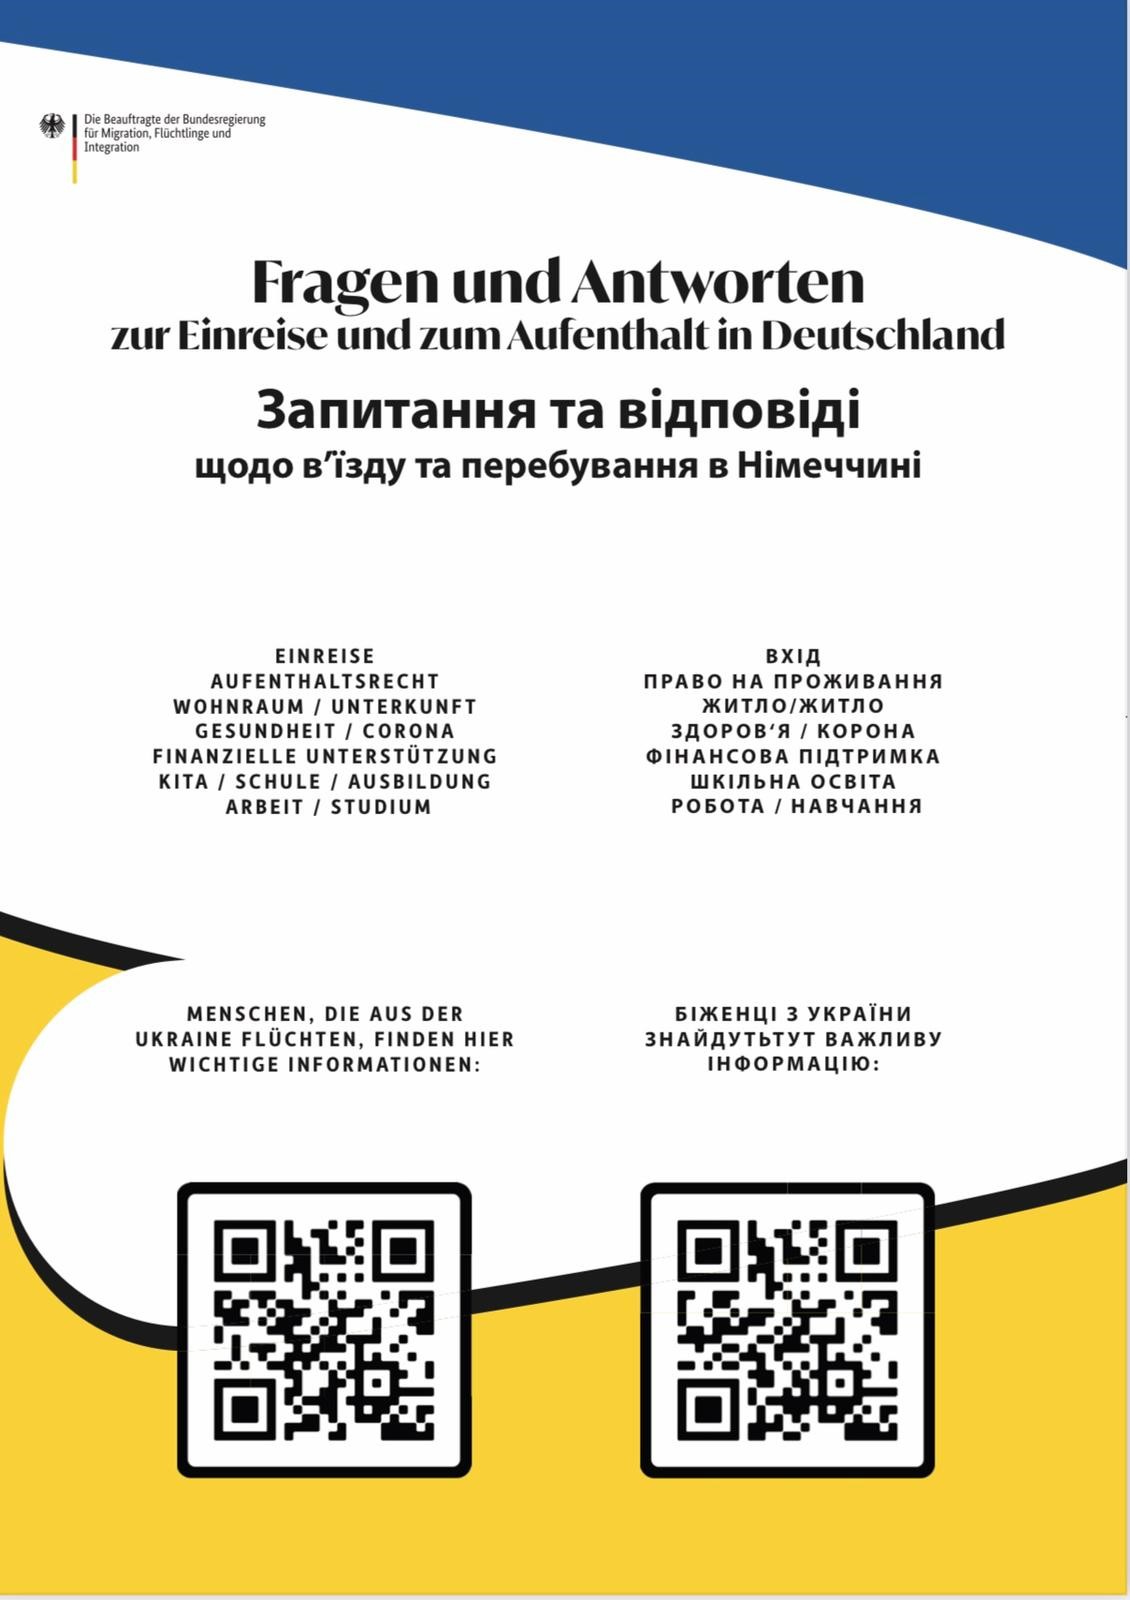  Plakat in ukrainischer Sprache - das Bild wird mit Klick vergrößert 